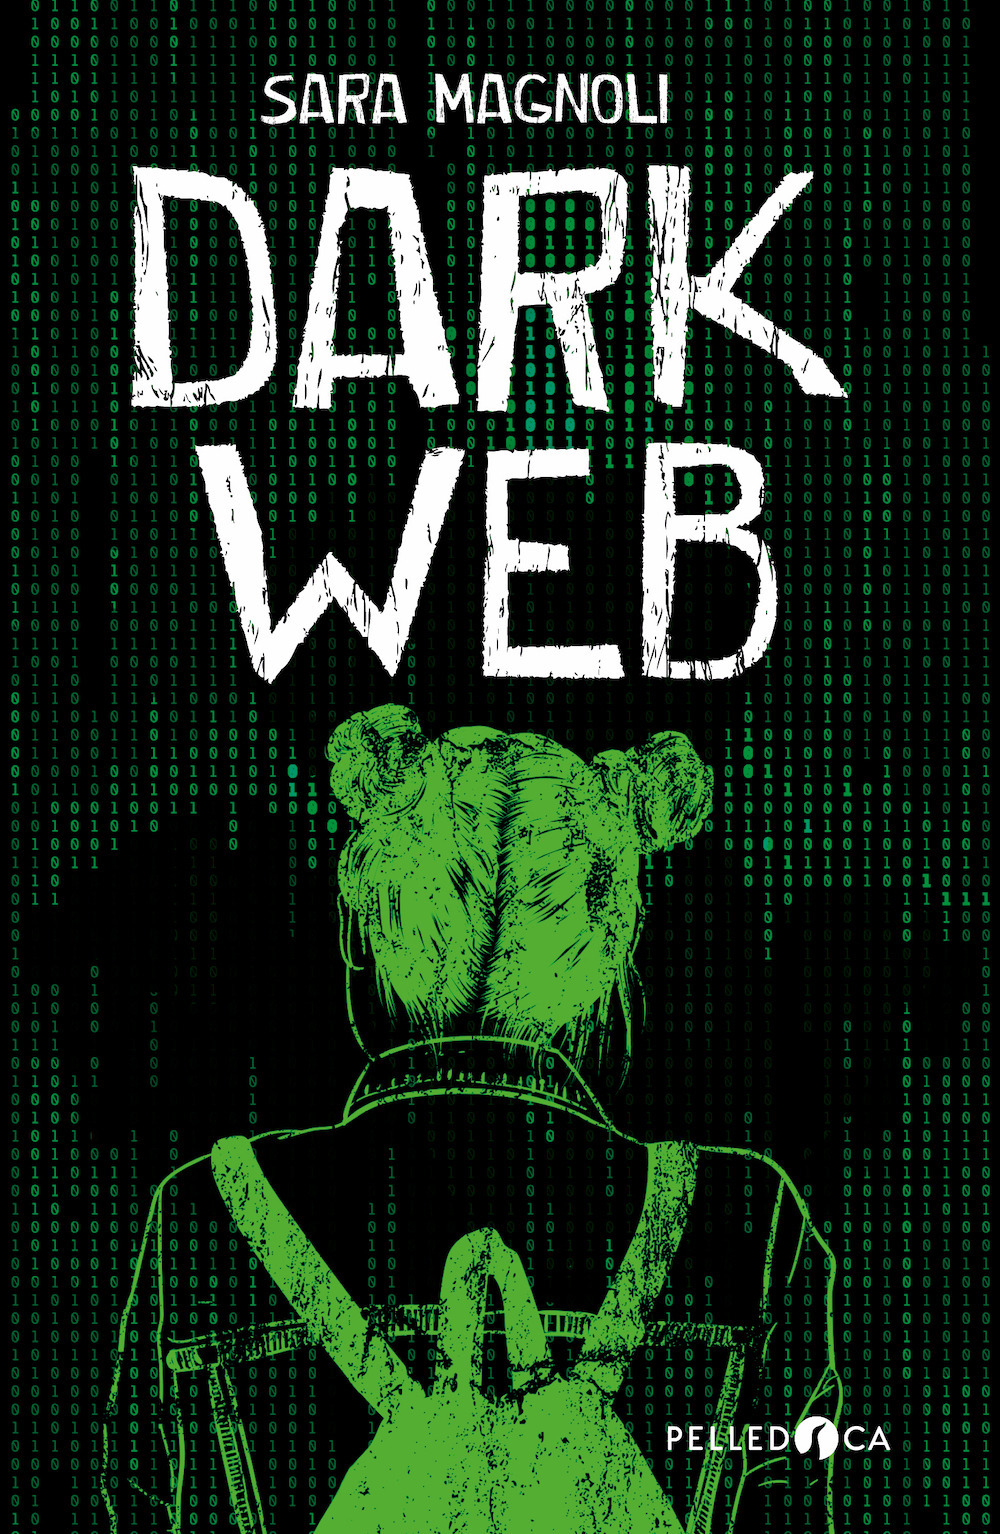 Dark web